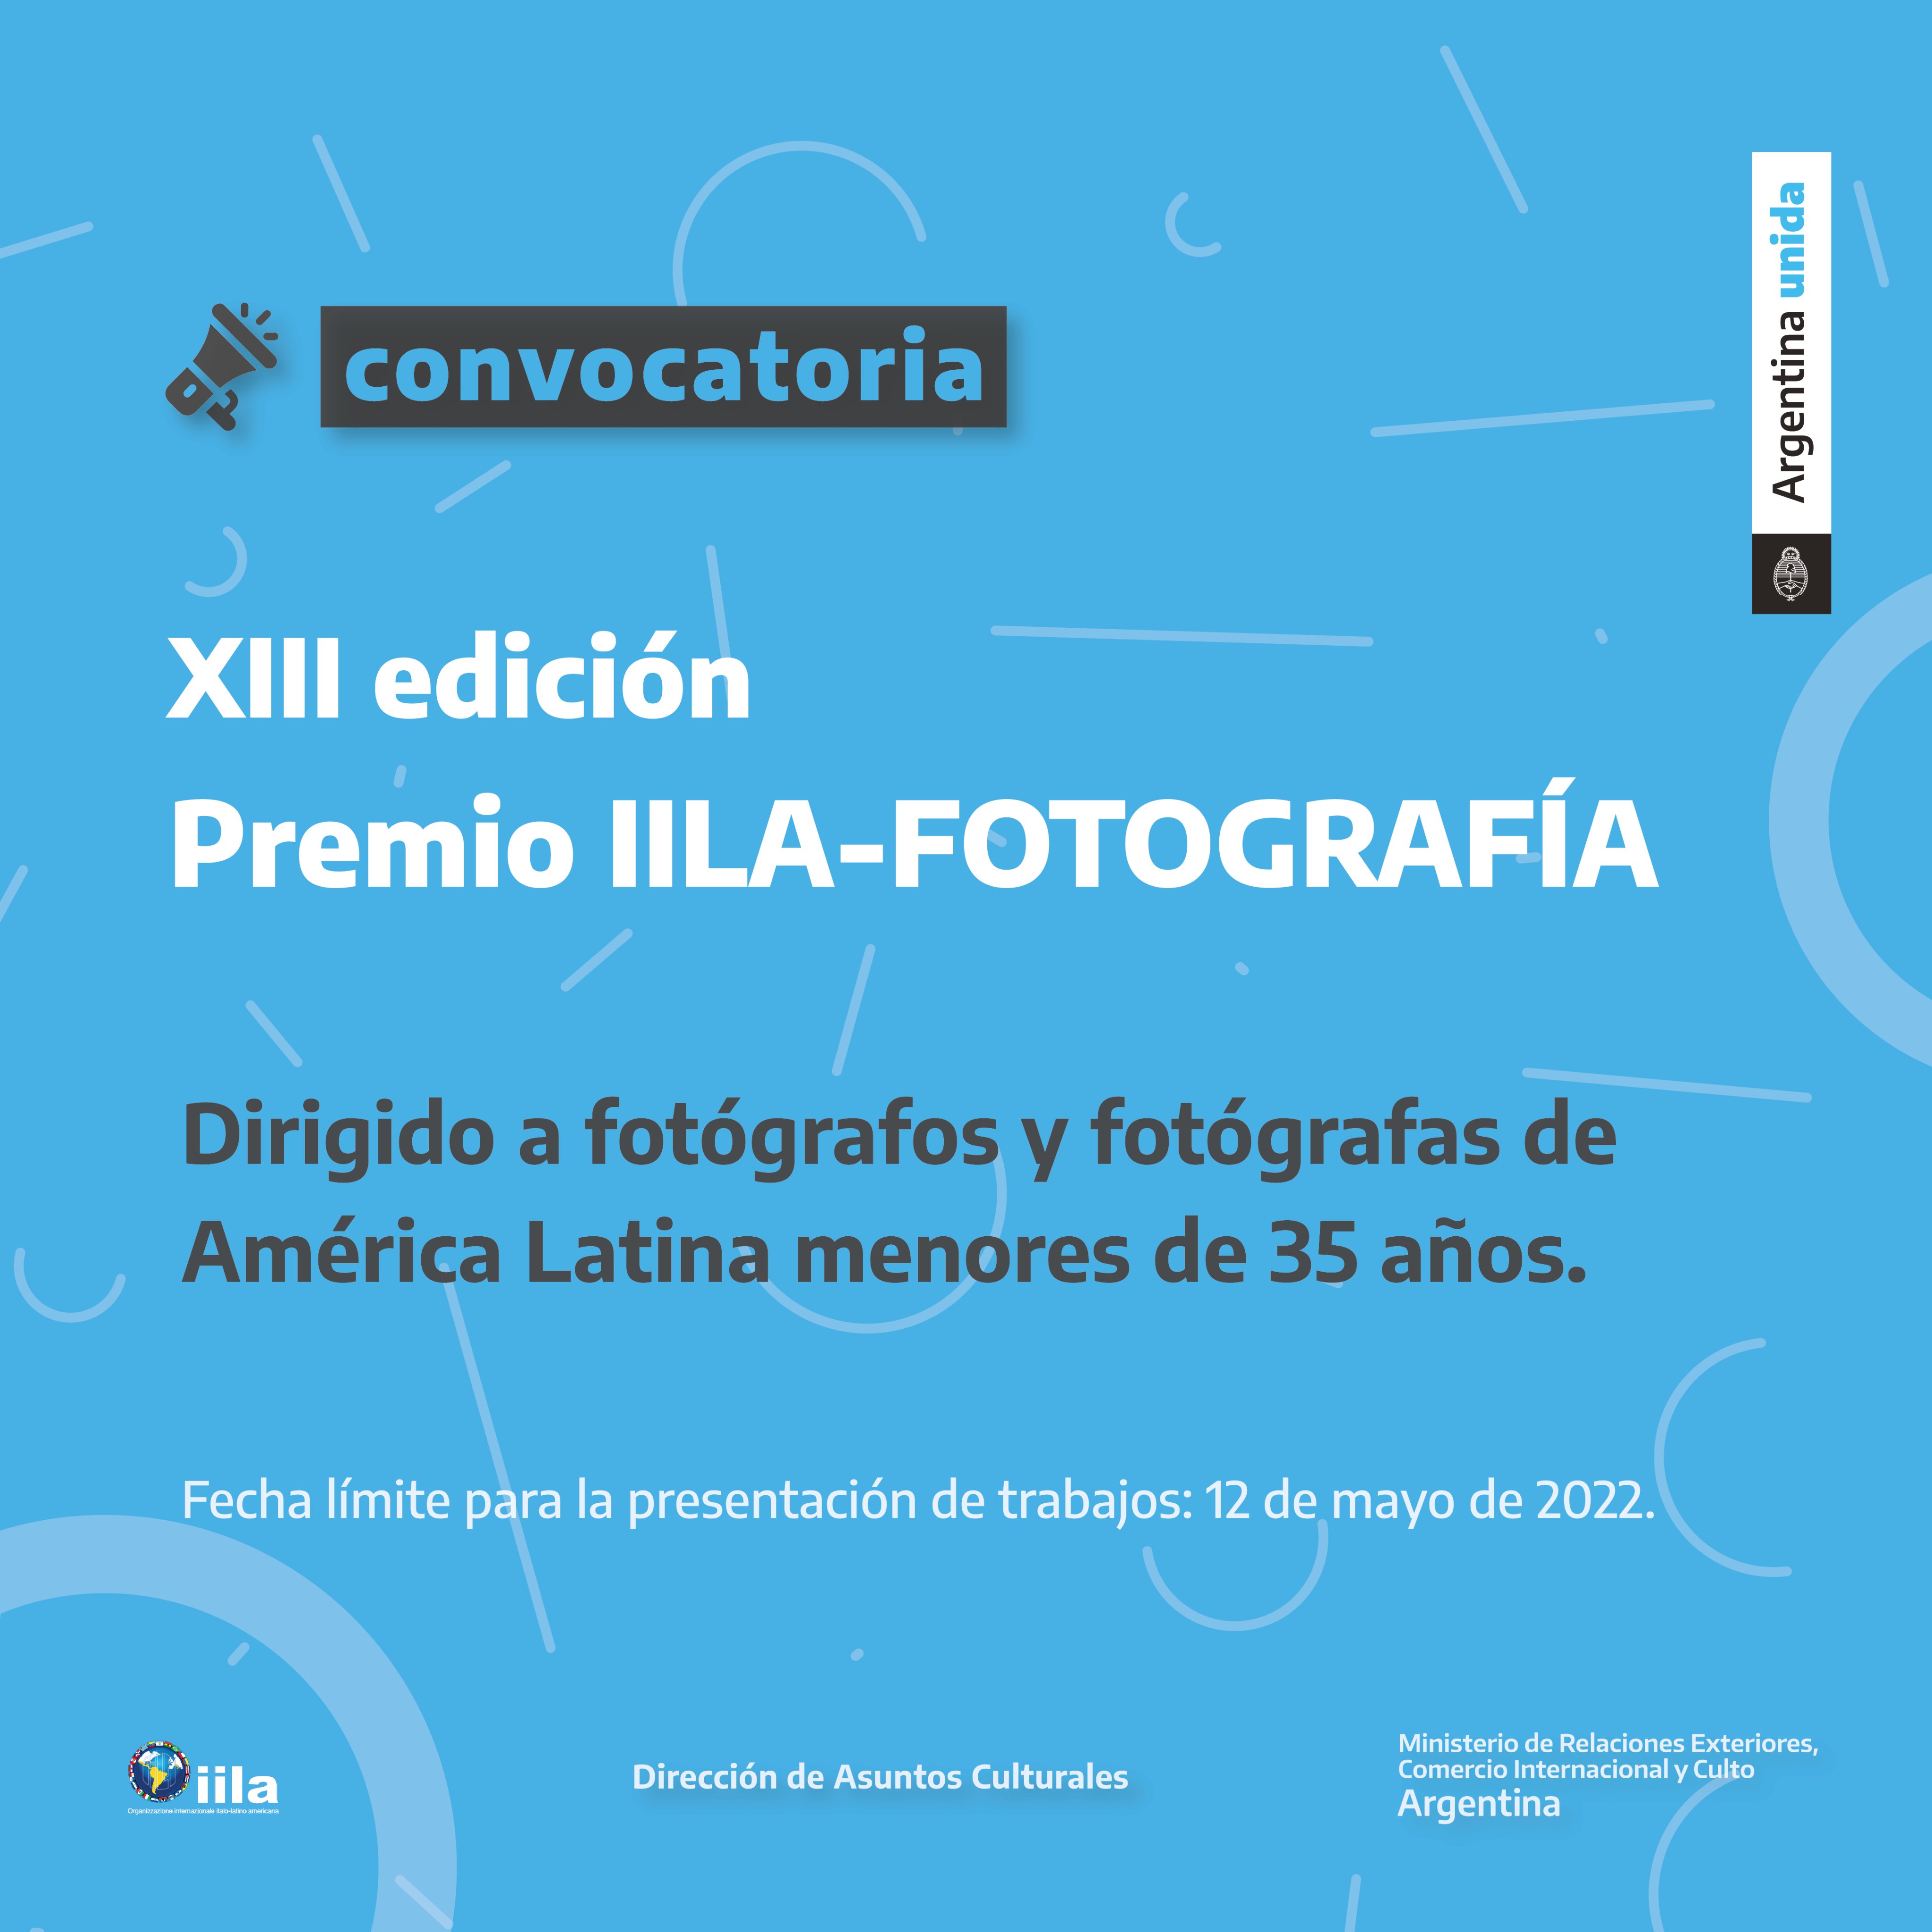 Convocatoria a XIII edición Premio IILA-Fotografía, “VAS! Vida, Agua, Salud” se encuentra habilitada hasta el 12 de mayo imagen